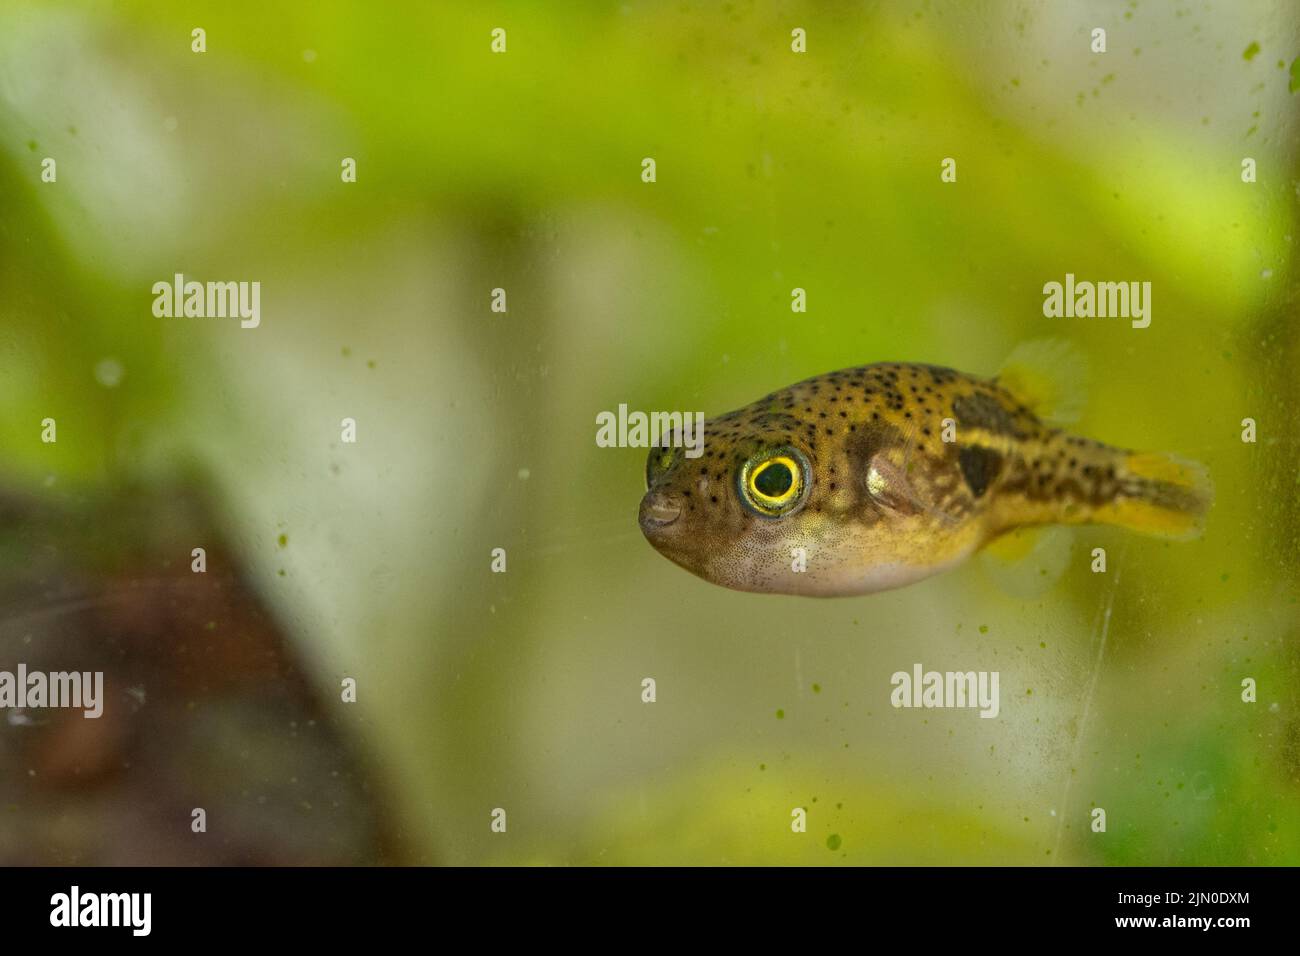 A closeup shot of a freshwater pufferfish in an aquarium Stock Photo